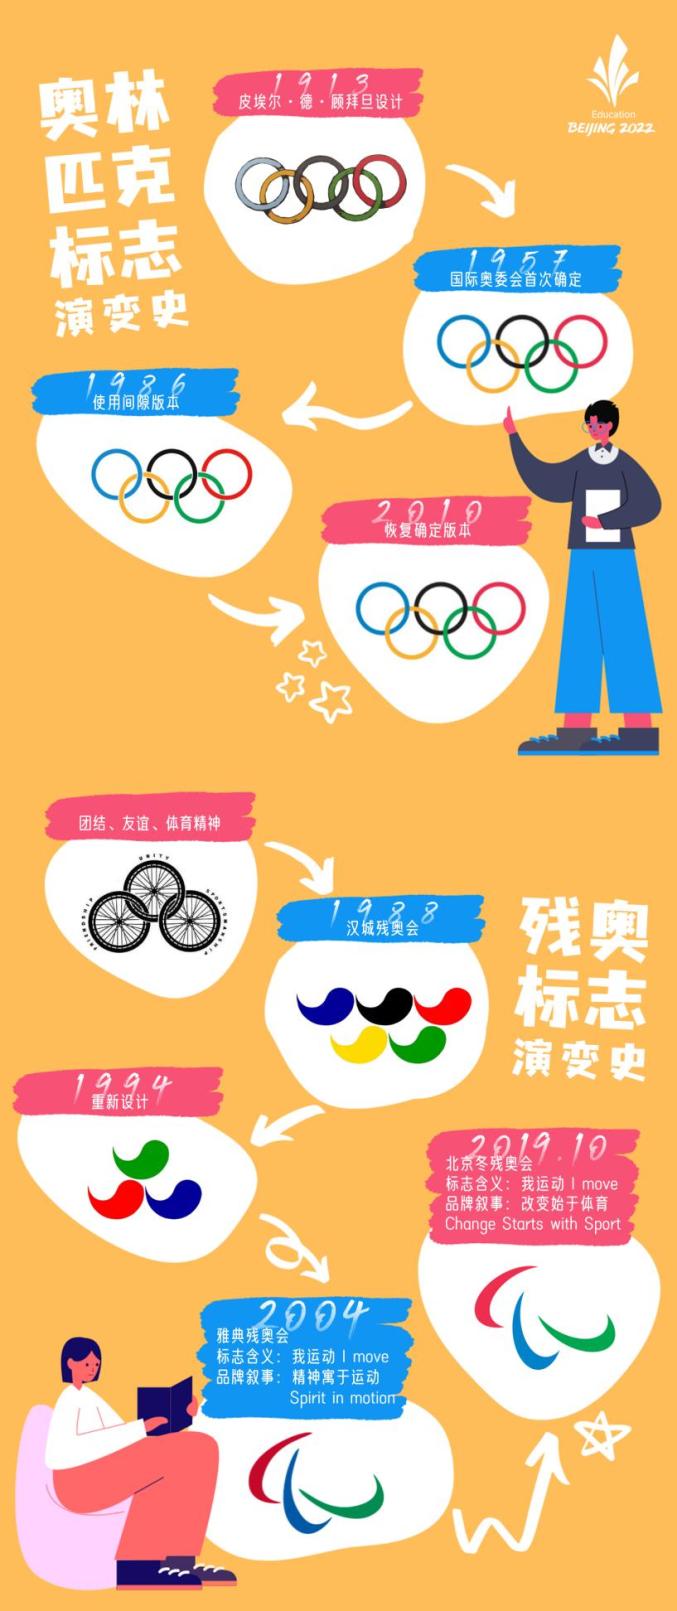 奥运五环的来历图片